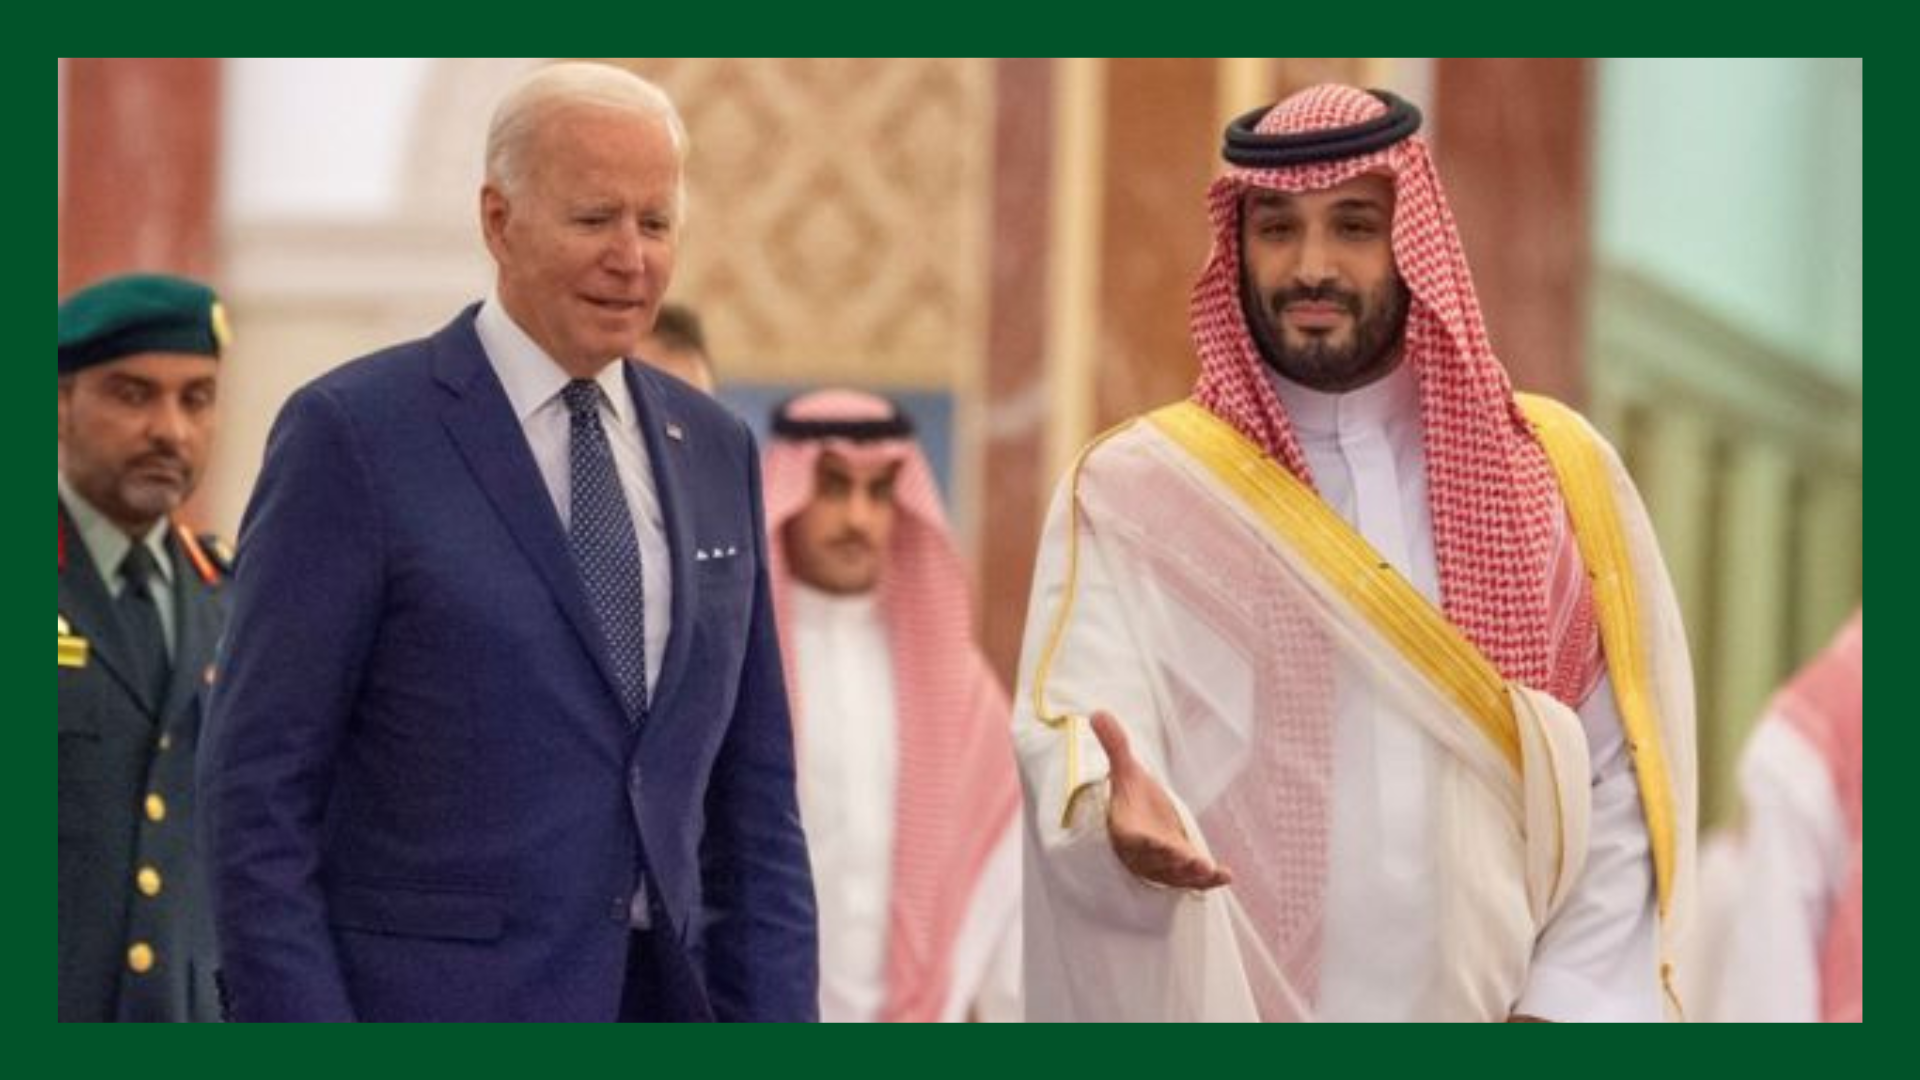 تعاون استراتيجي مستدام بين الولايات المتحدة والسعودية